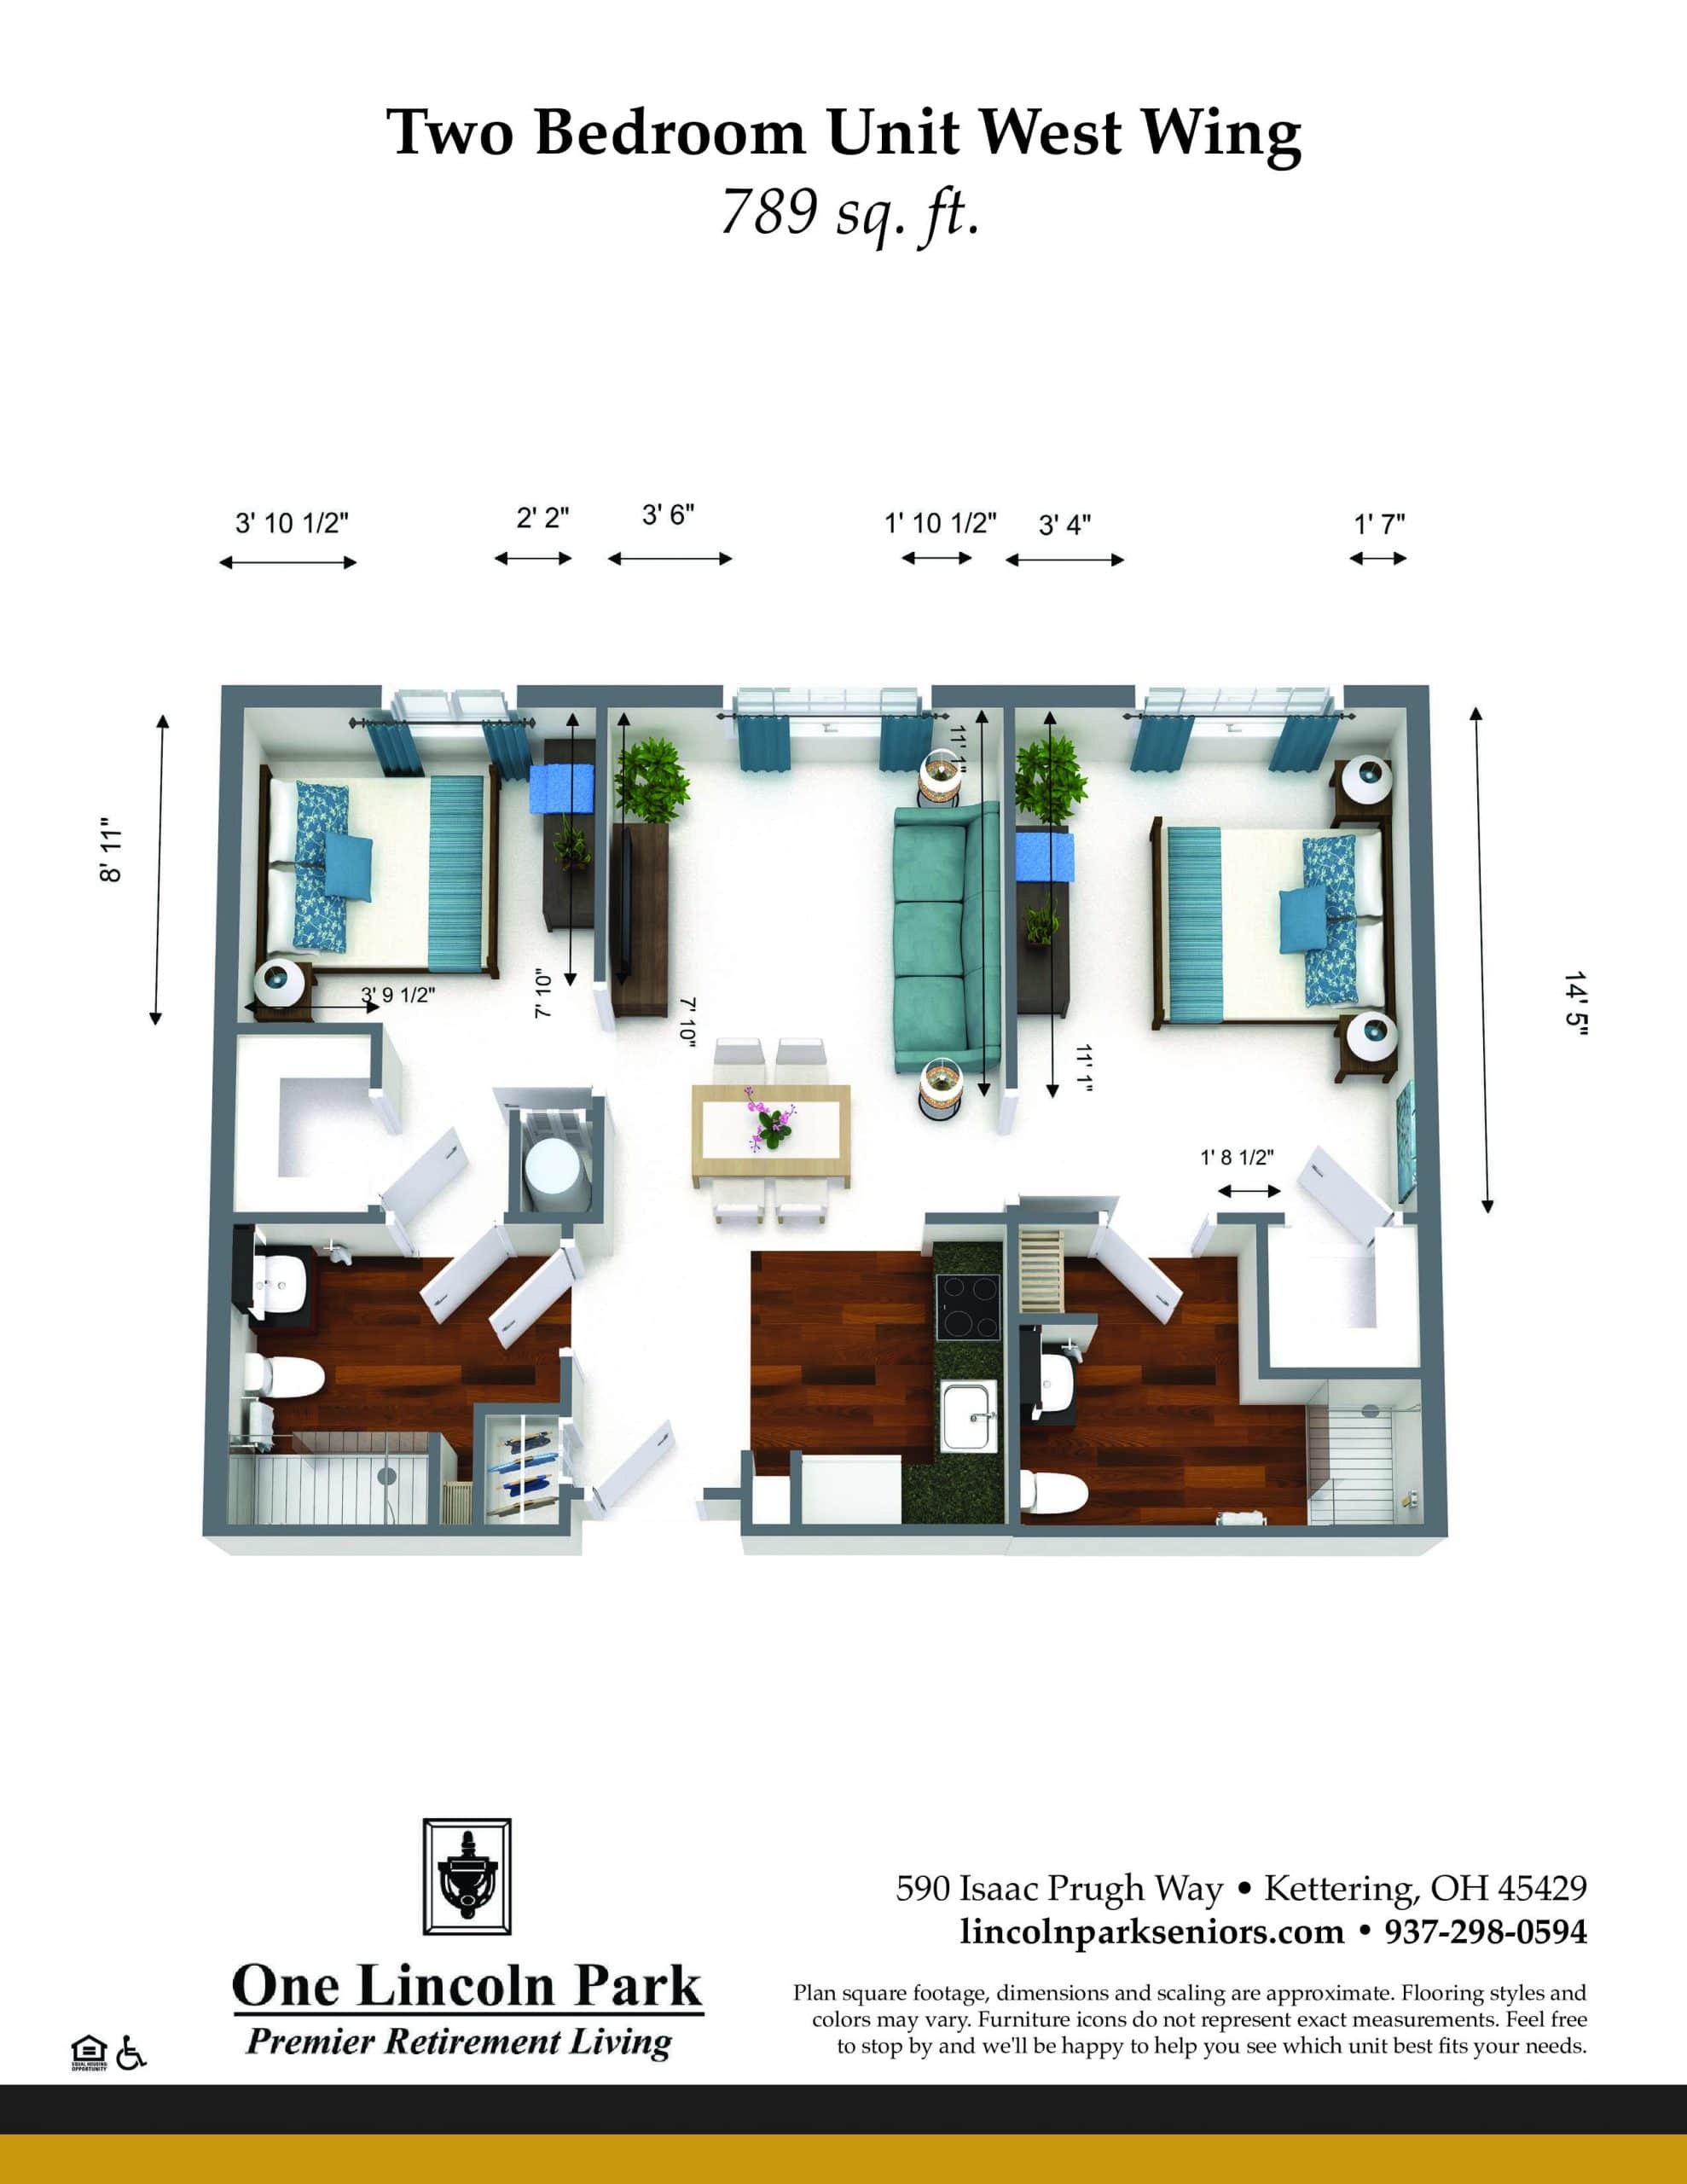 Two bedroom Floor plan